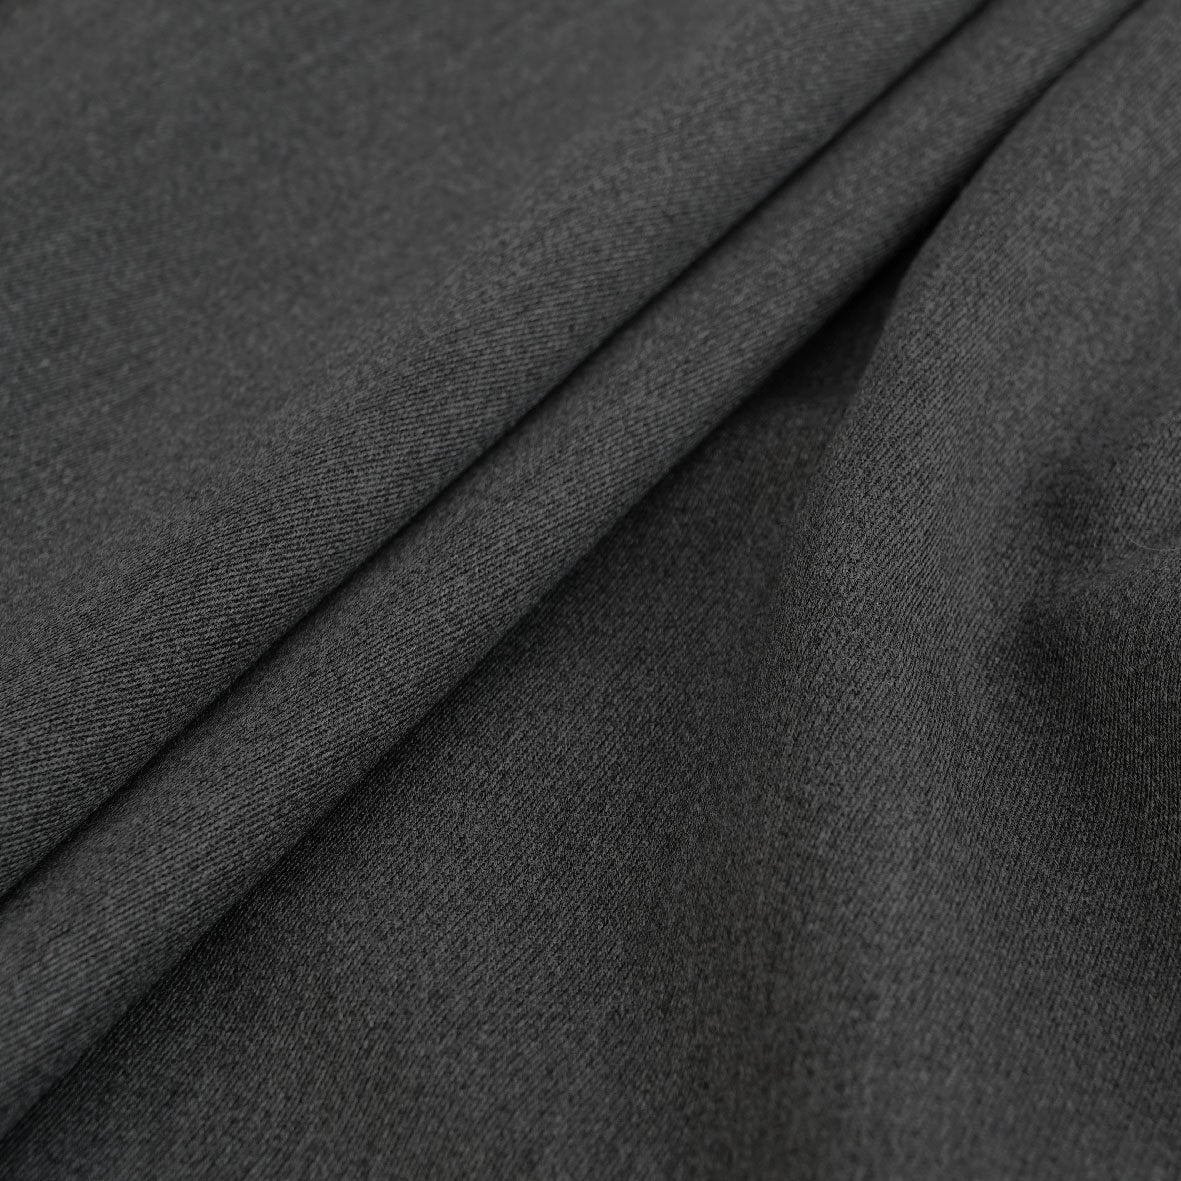 Melange Grey Jacket Fabric 2409 - Fabrics4Fashion